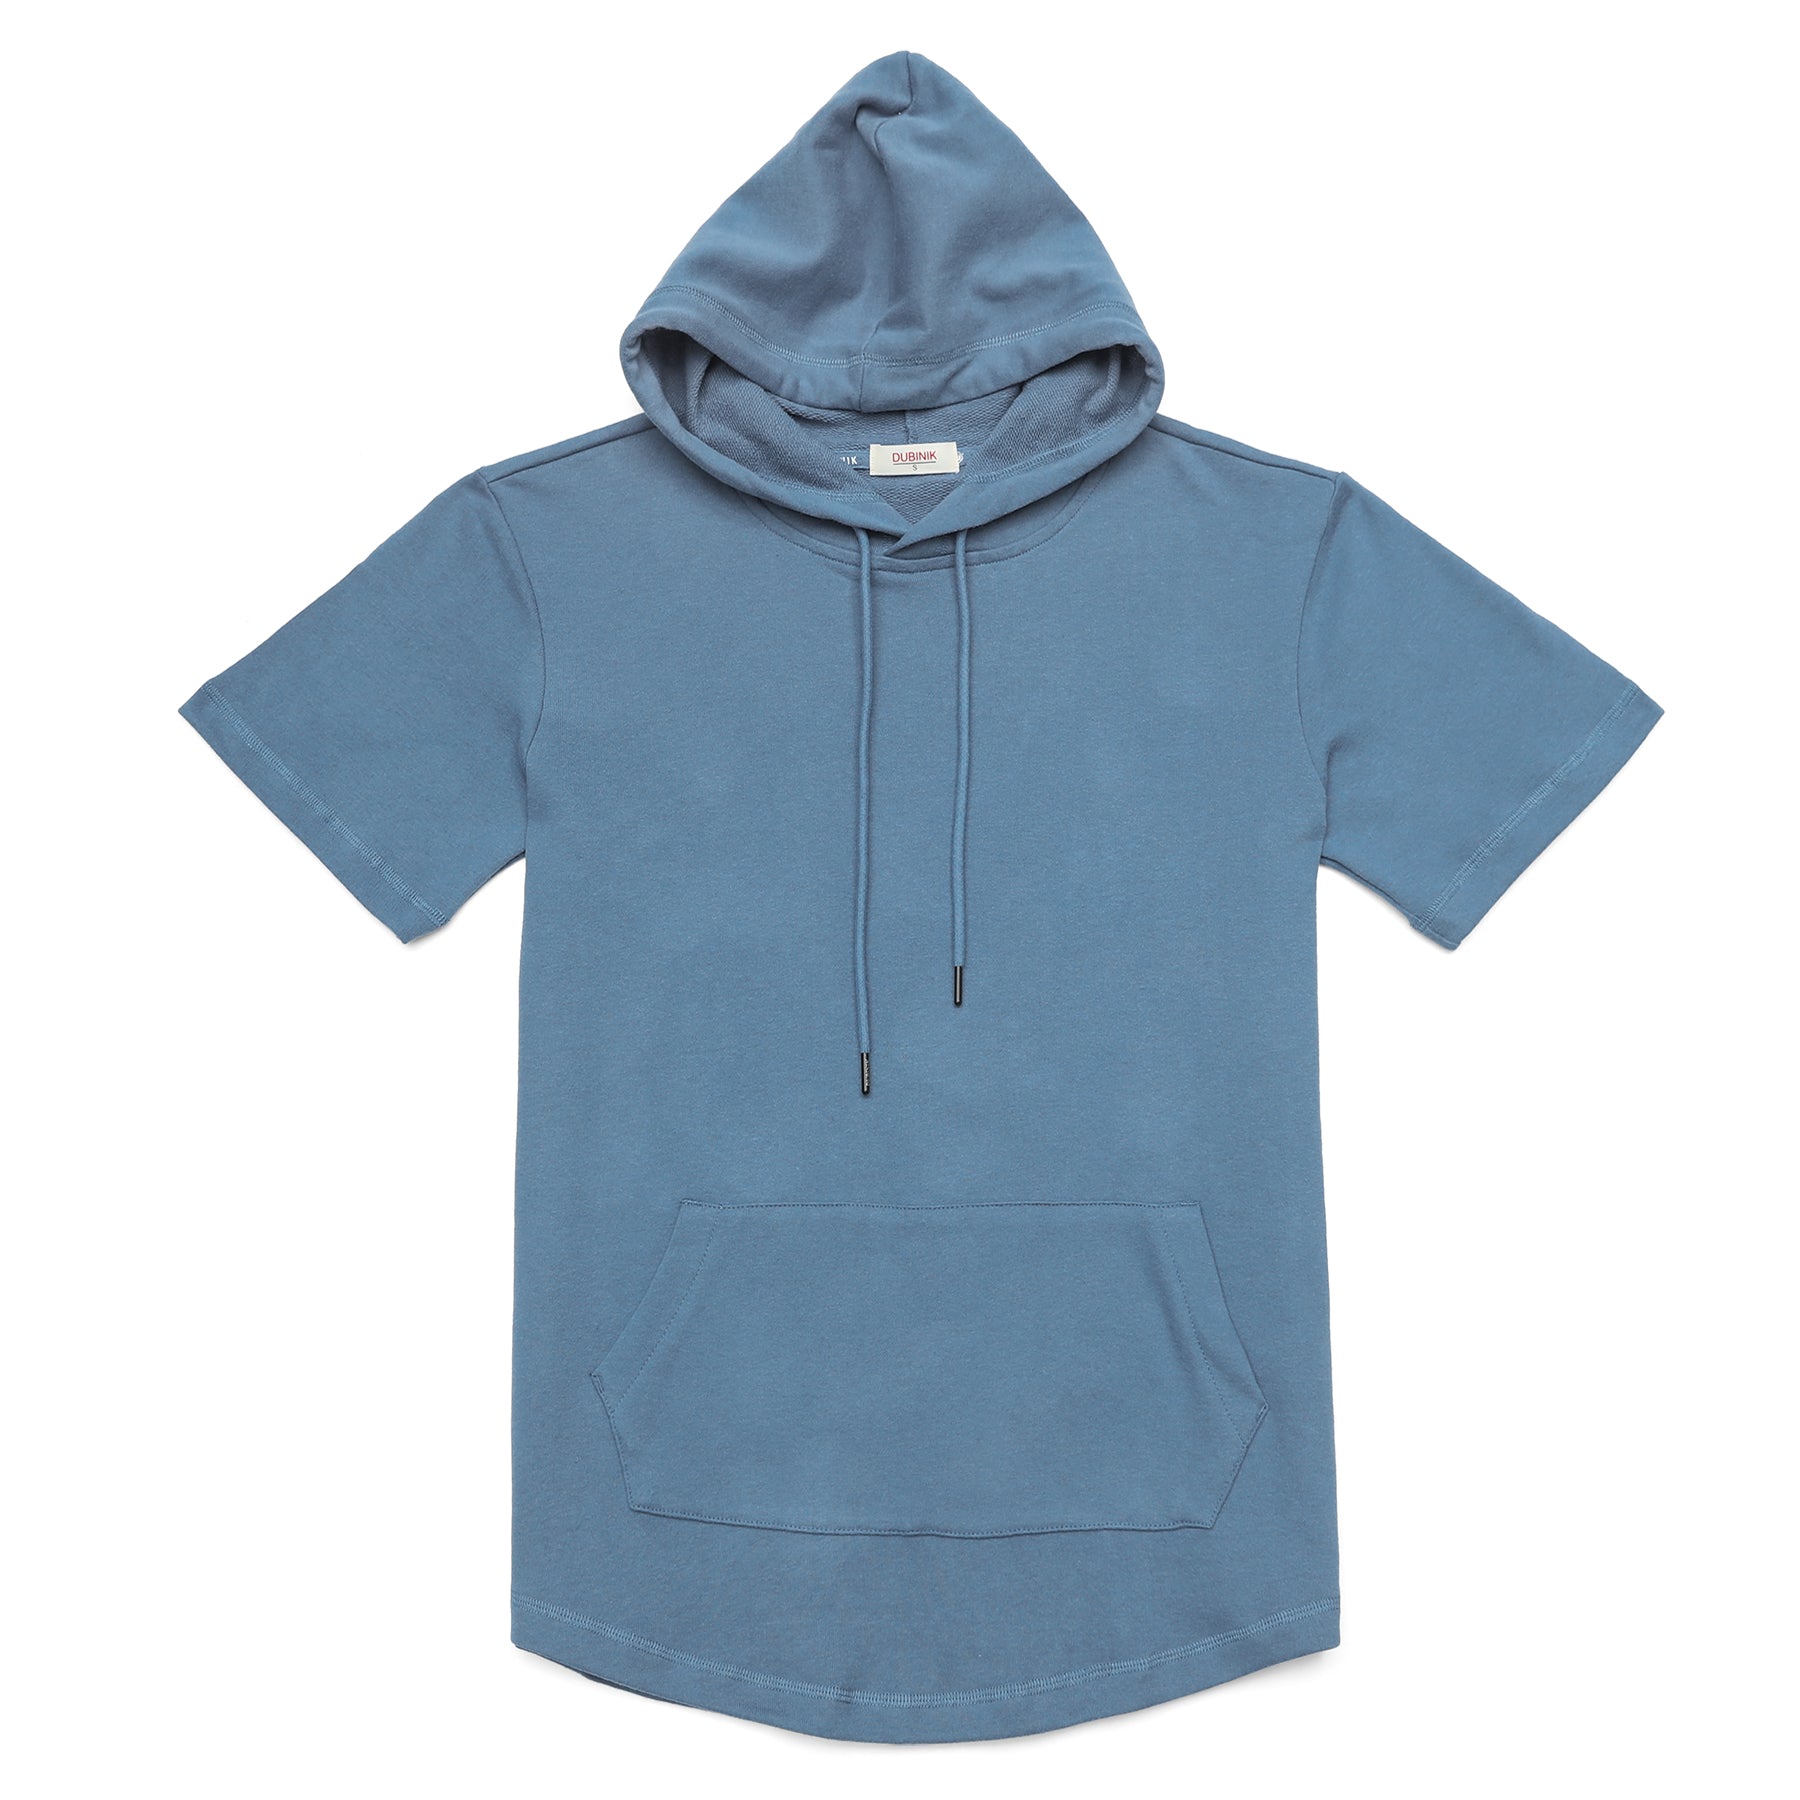 Men's Hoodies short-sleeved hooded sweatshirt #0616